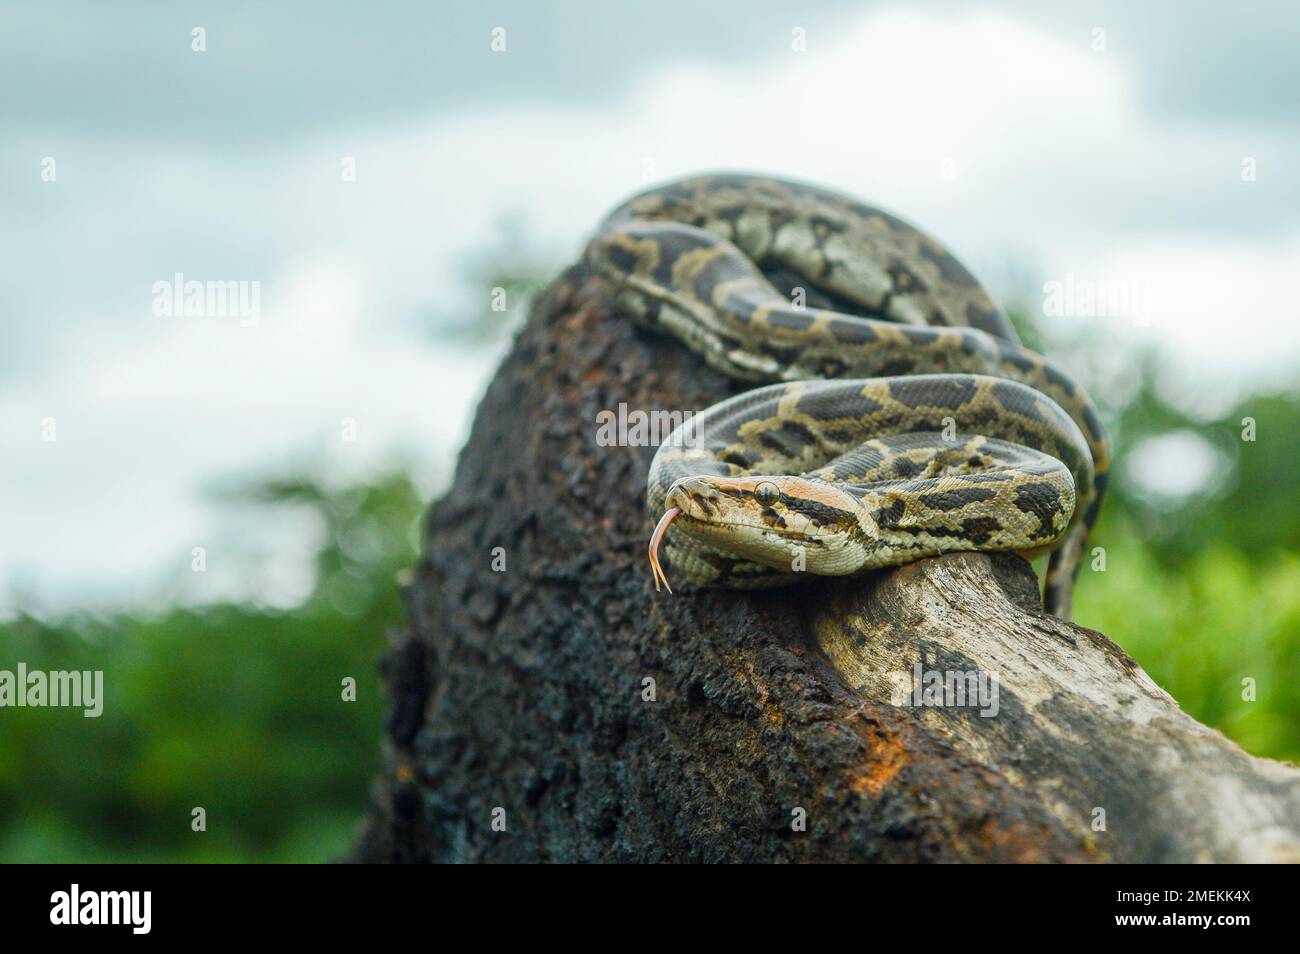 Indische Python, Python molurus ist eine große, nicht giftige Python-Art, die in tropischen und subtropischen Regionen des indischen Subkontinents, Mumbai, Ma, heimisch ist Stockfoto